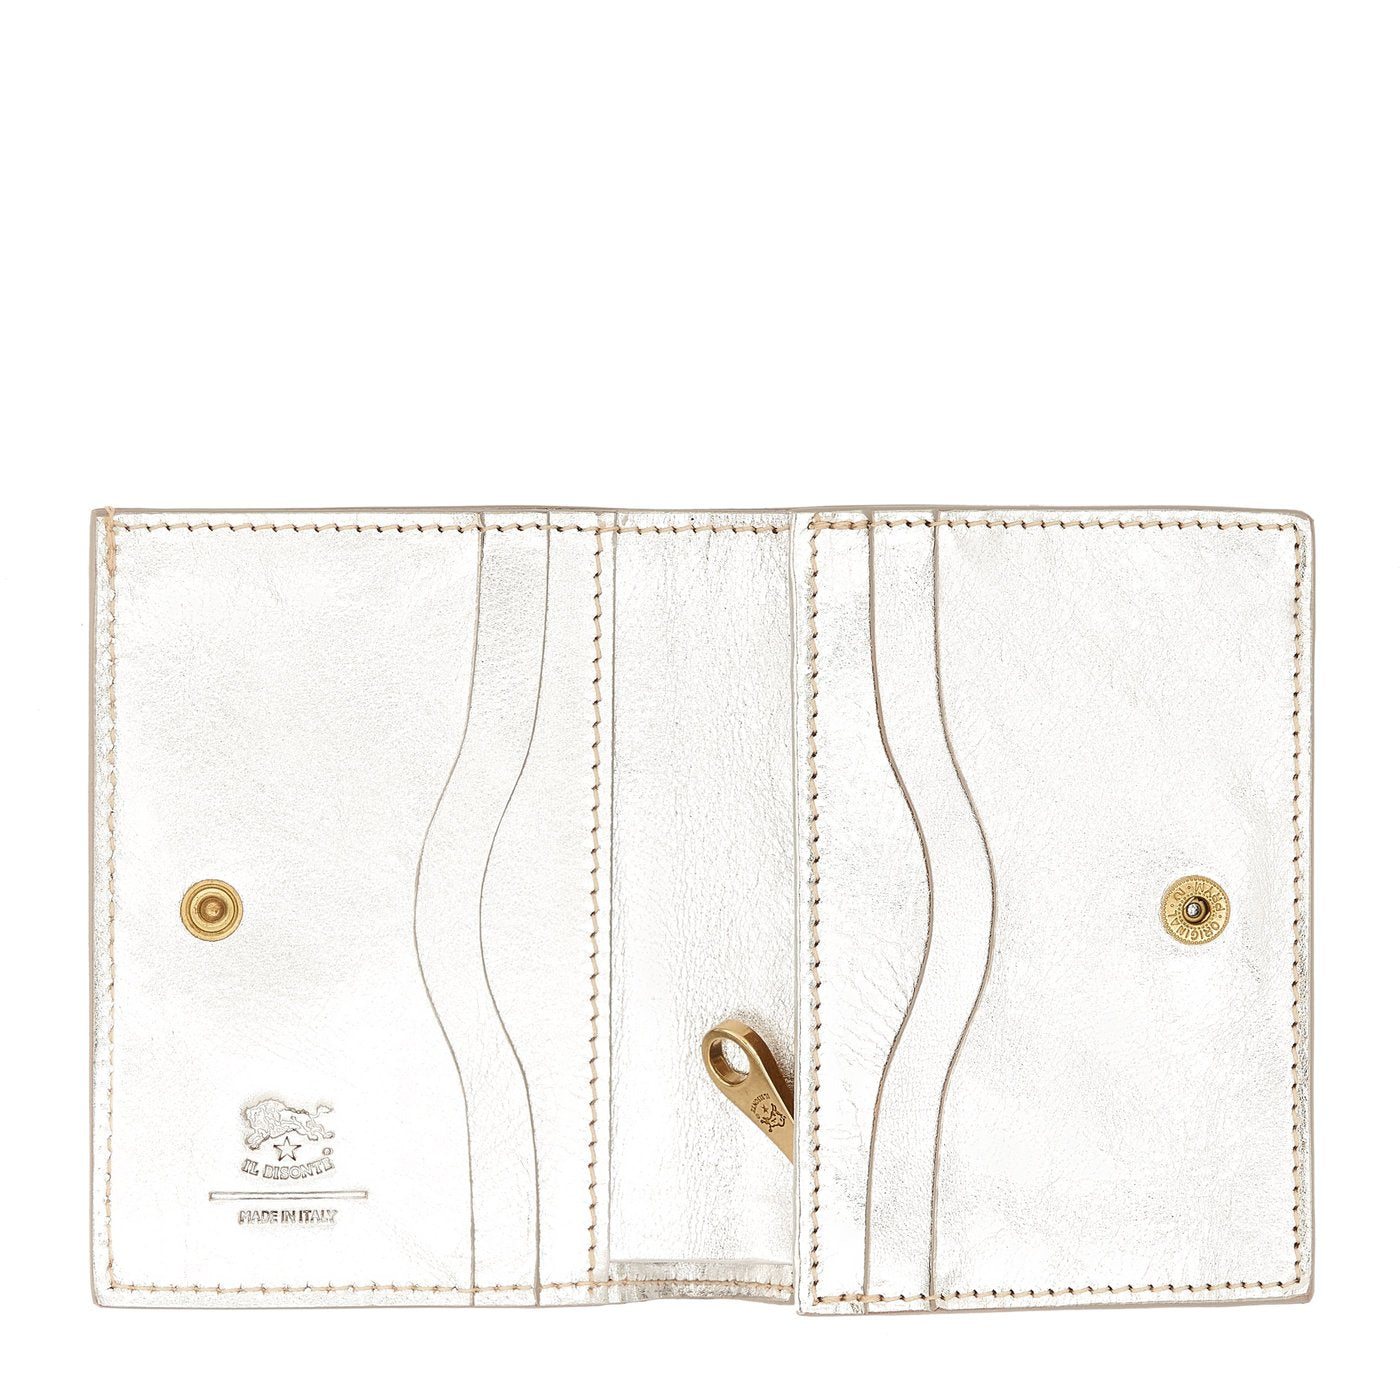 Oliveta | Portefeuille zippé pour femme en cuir métallisé couleur métallique argent